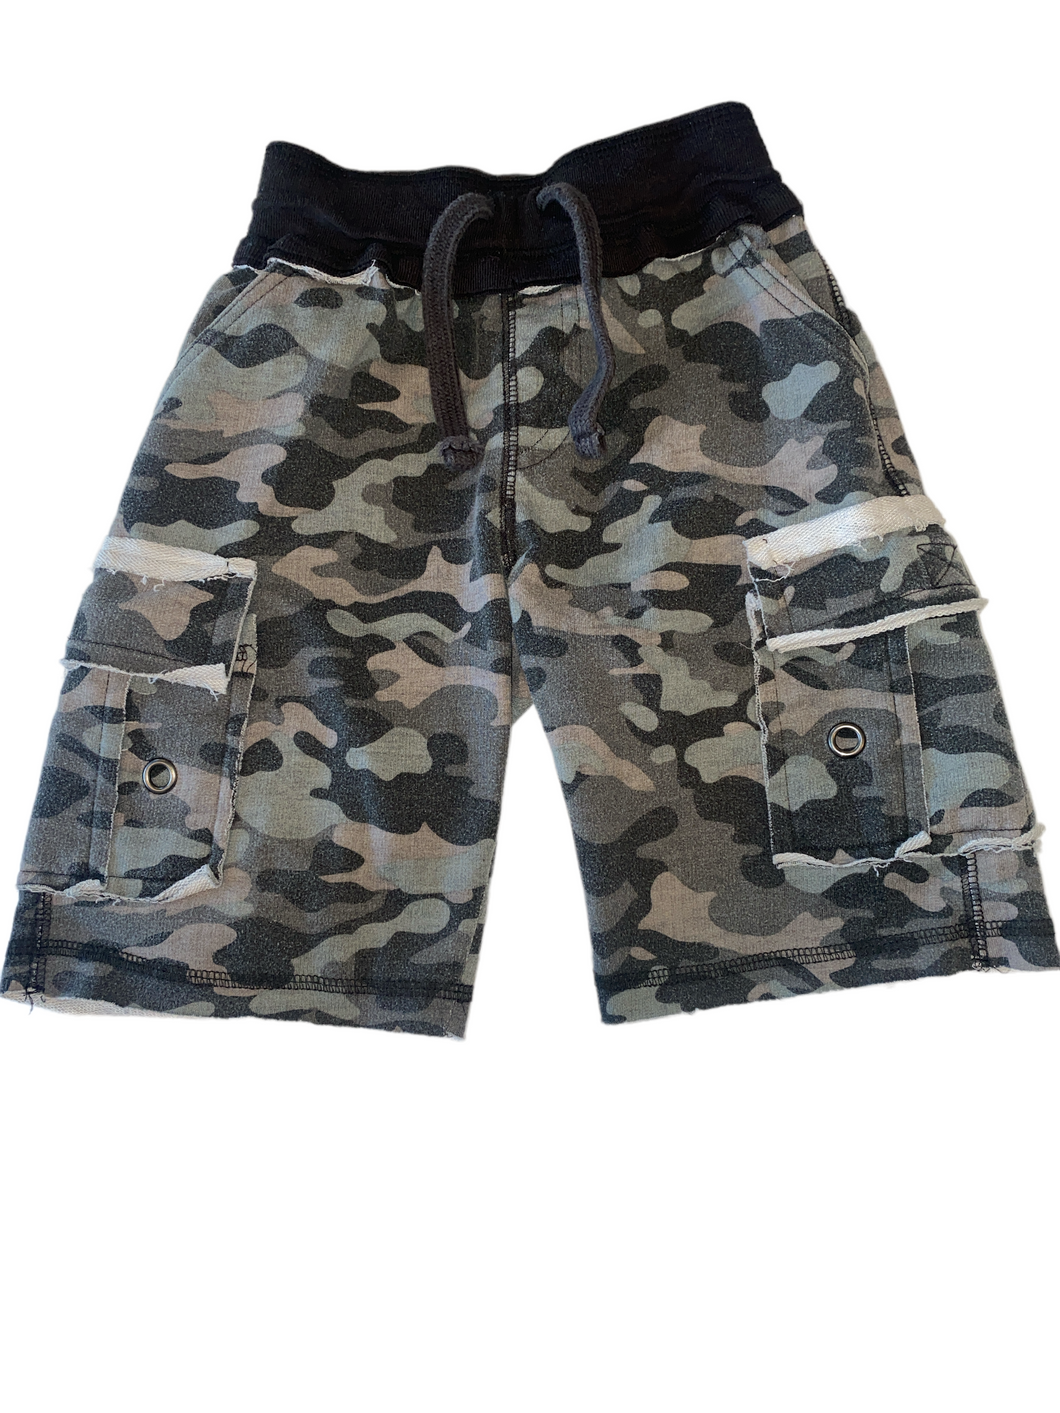 Mish boys camouflage cargo lounge shorts 4